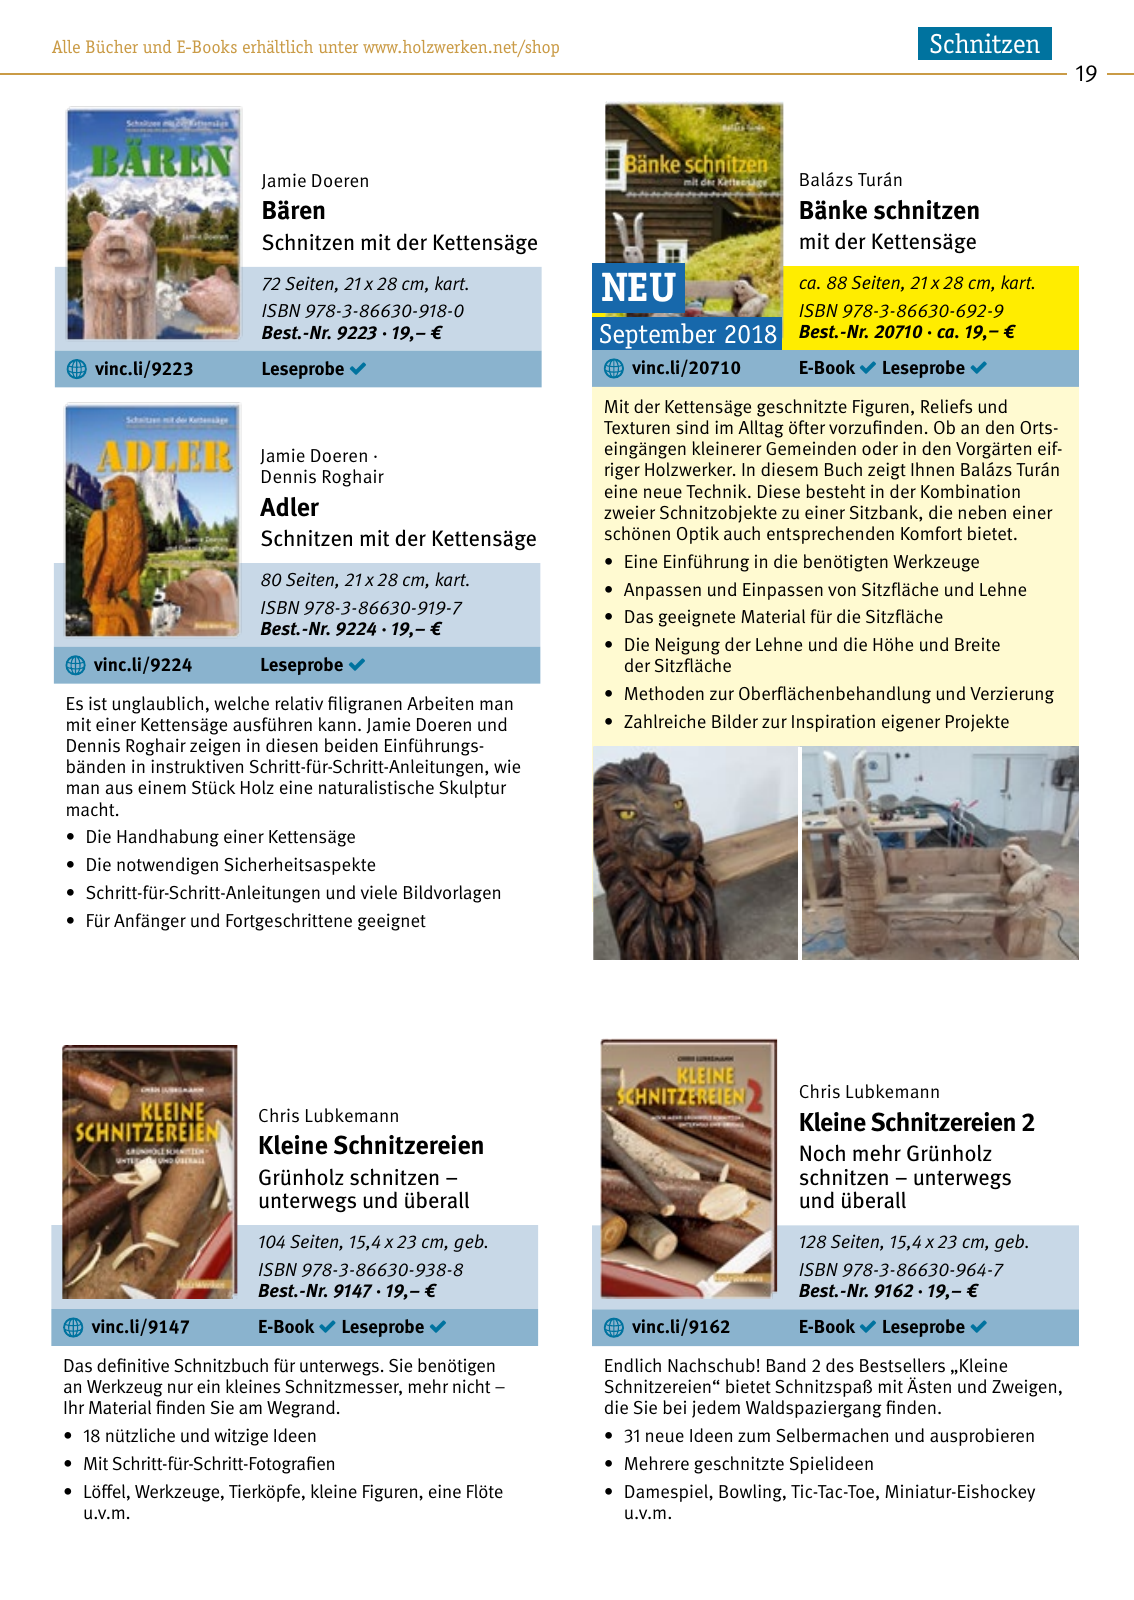 Vorschau HolzWerken Katalog 2019 Seite 19